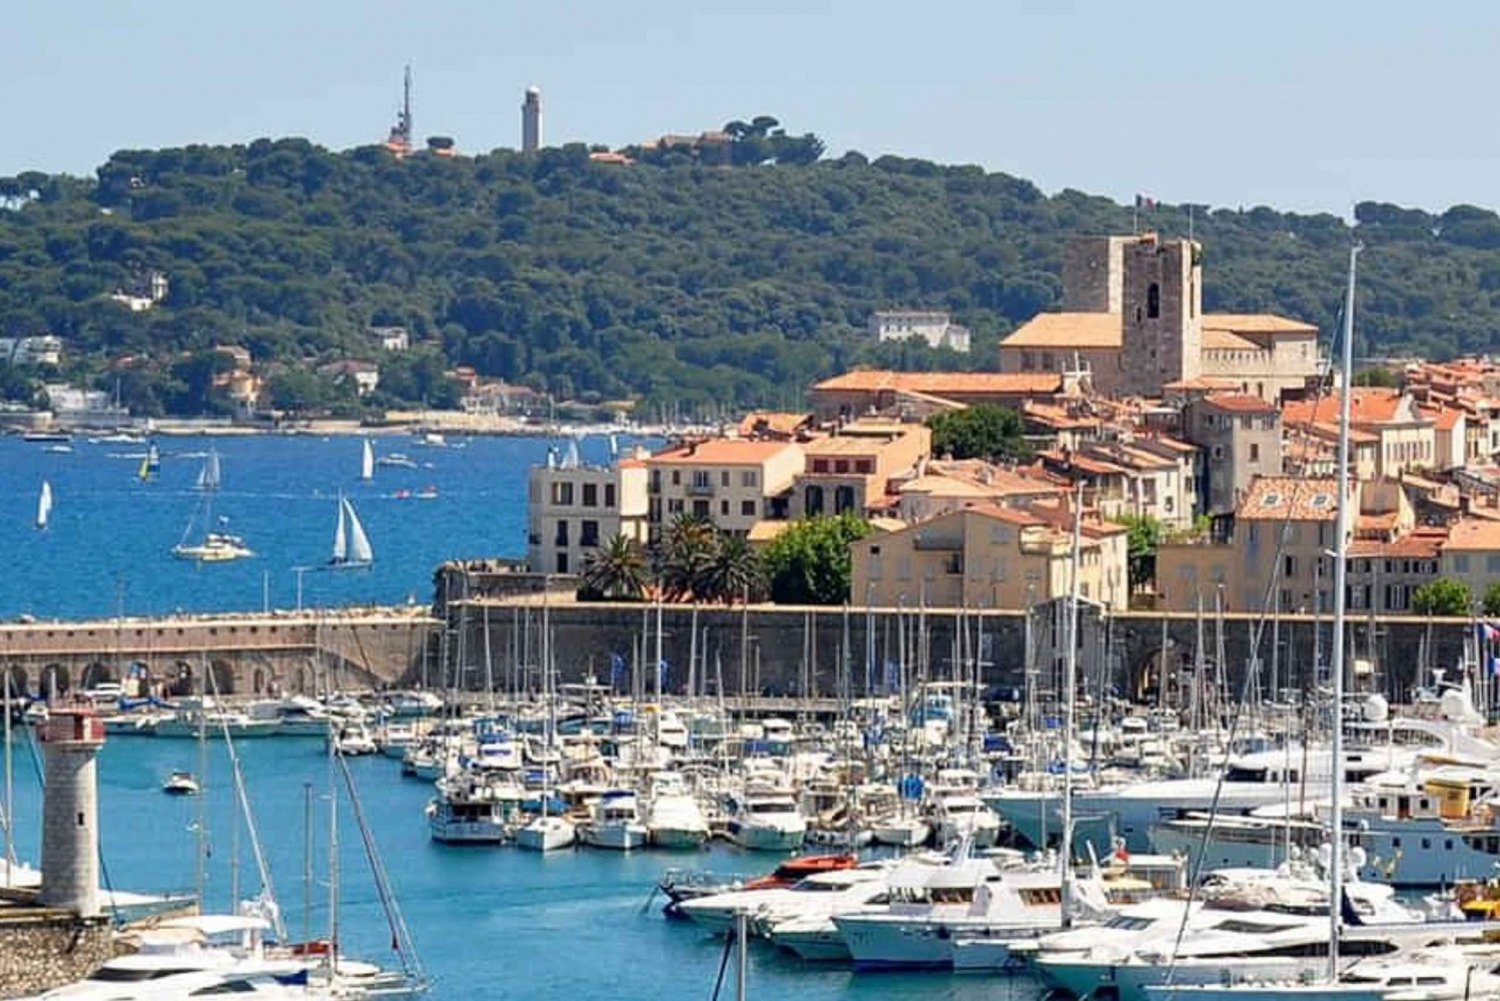 French Riviera Tour: Cannes, Antibes & Saint-Paul de Vence